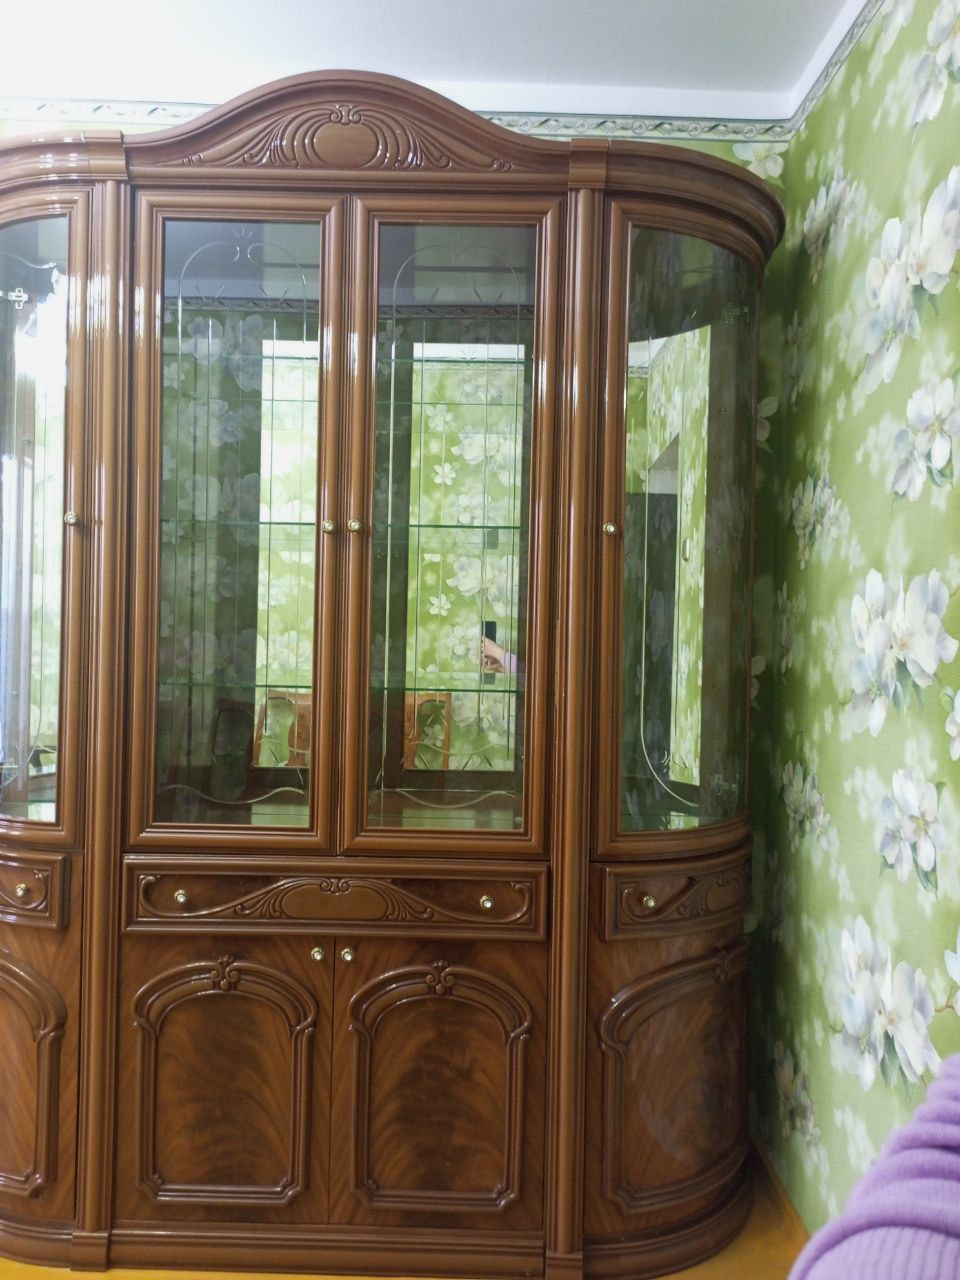 Продам мебель для зала сервант с зеркальным комодом.Италия.Новое